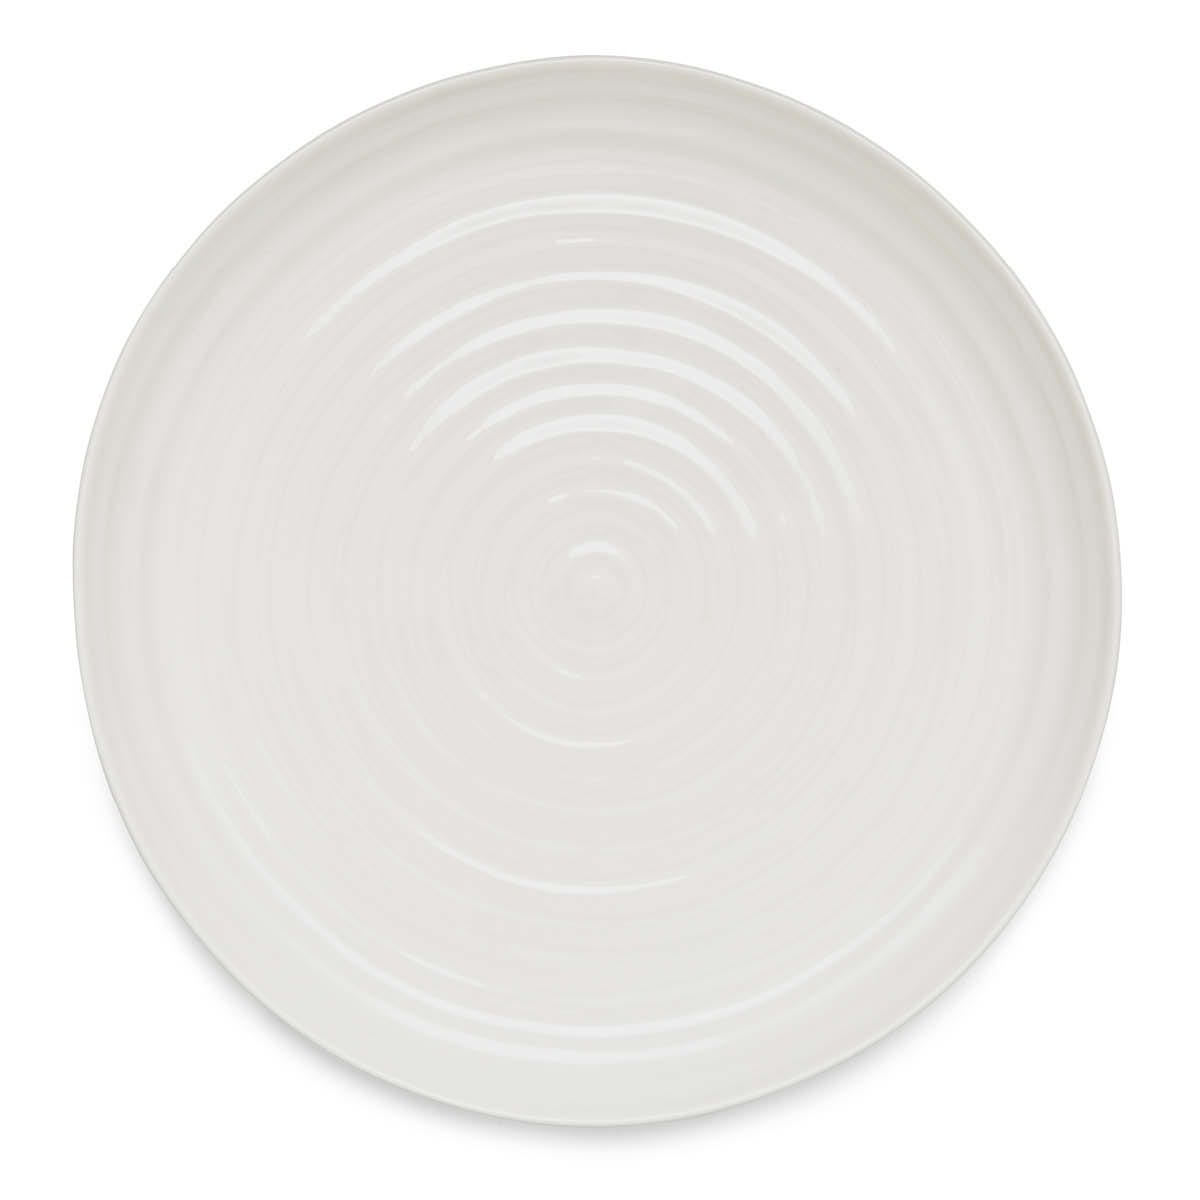 Sophie Conran Round Platter, White